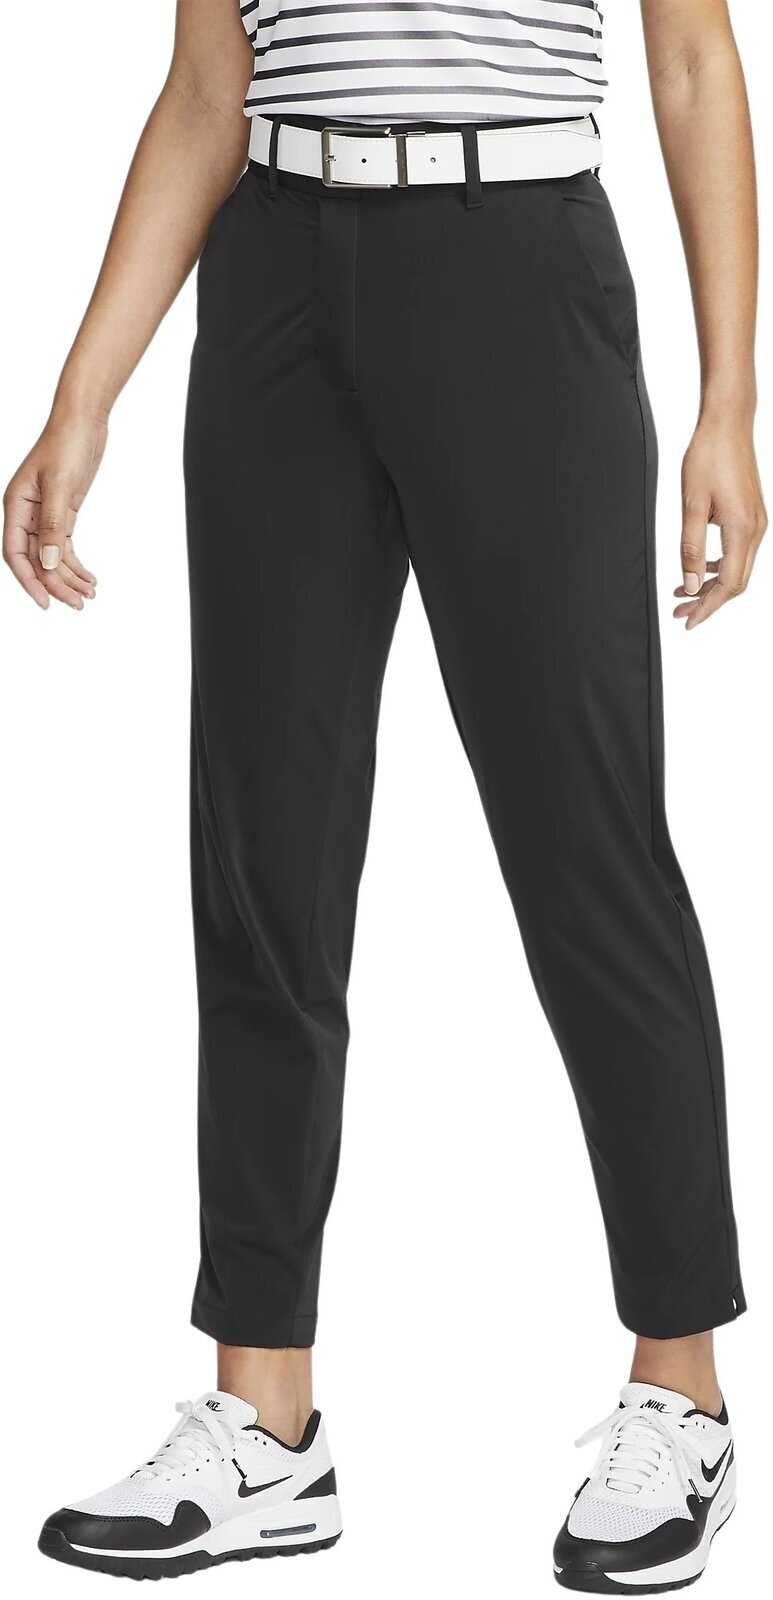 Bukser Nike Dri-Fit Tour Womens Pants Black/White L